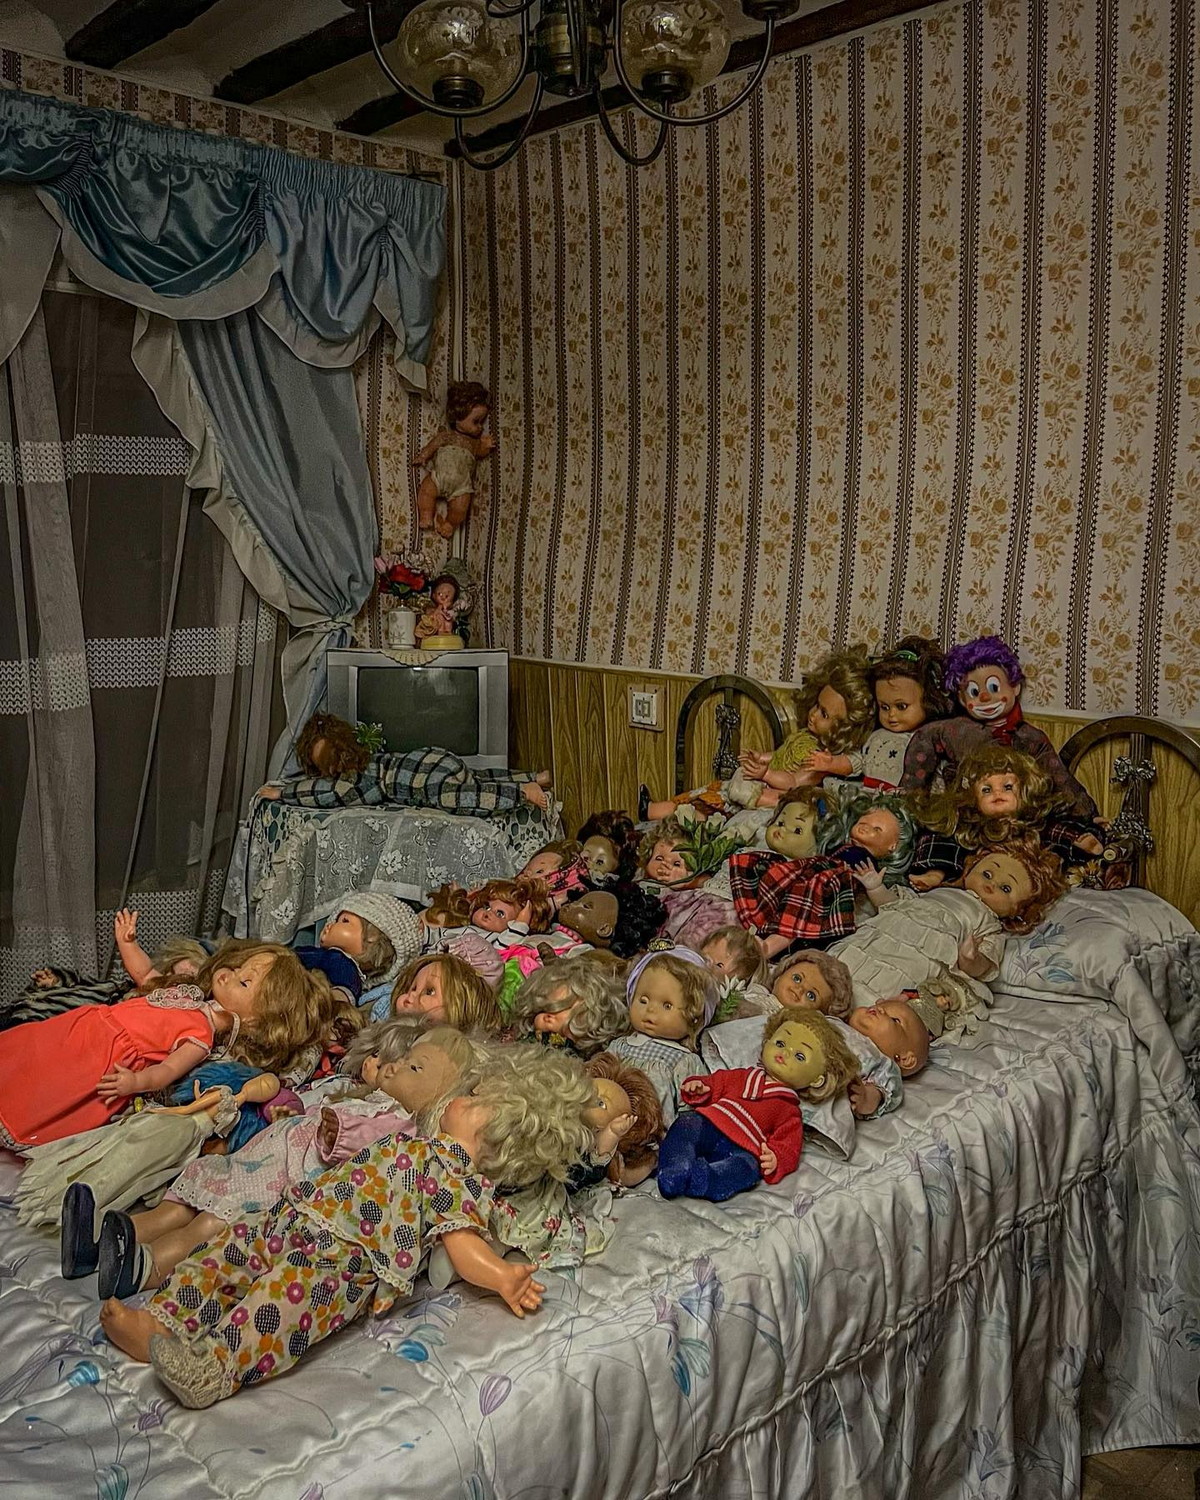 Жуткий заброшенный испанский дом с тысячей кукол